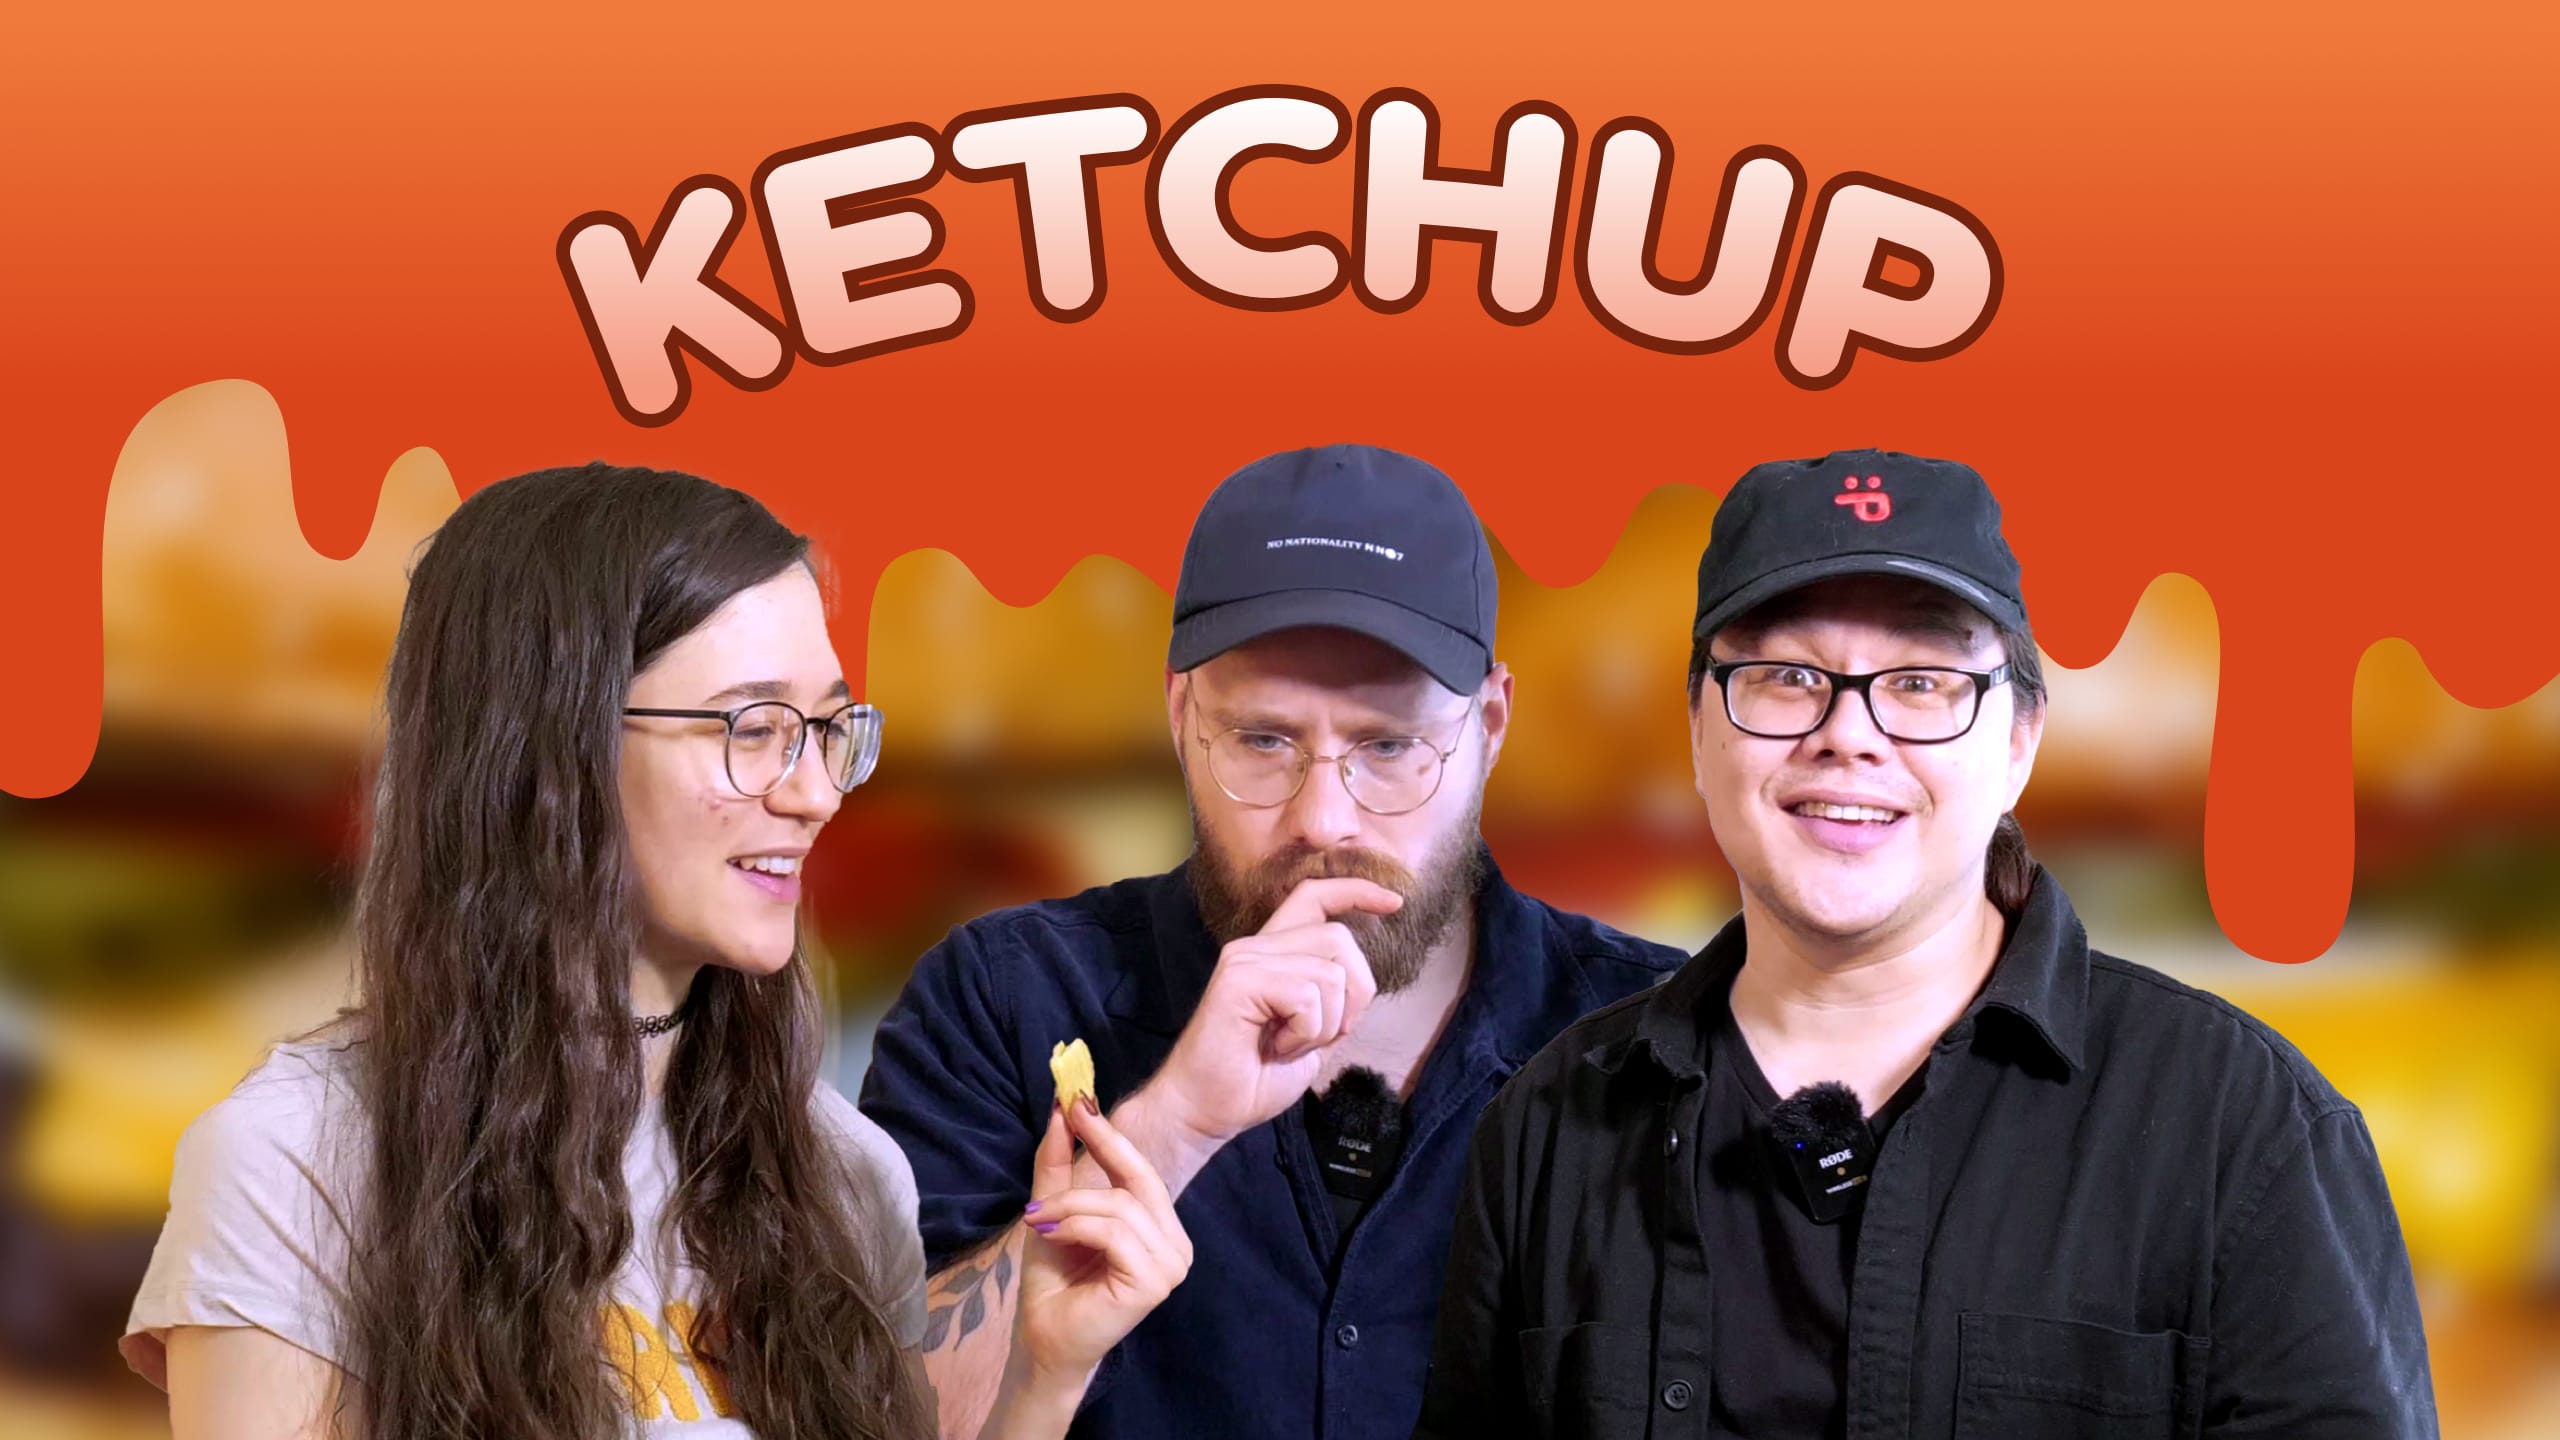 Youtube: Bästa ketchupen till din burgare – Burgerdudes testpanel del 4